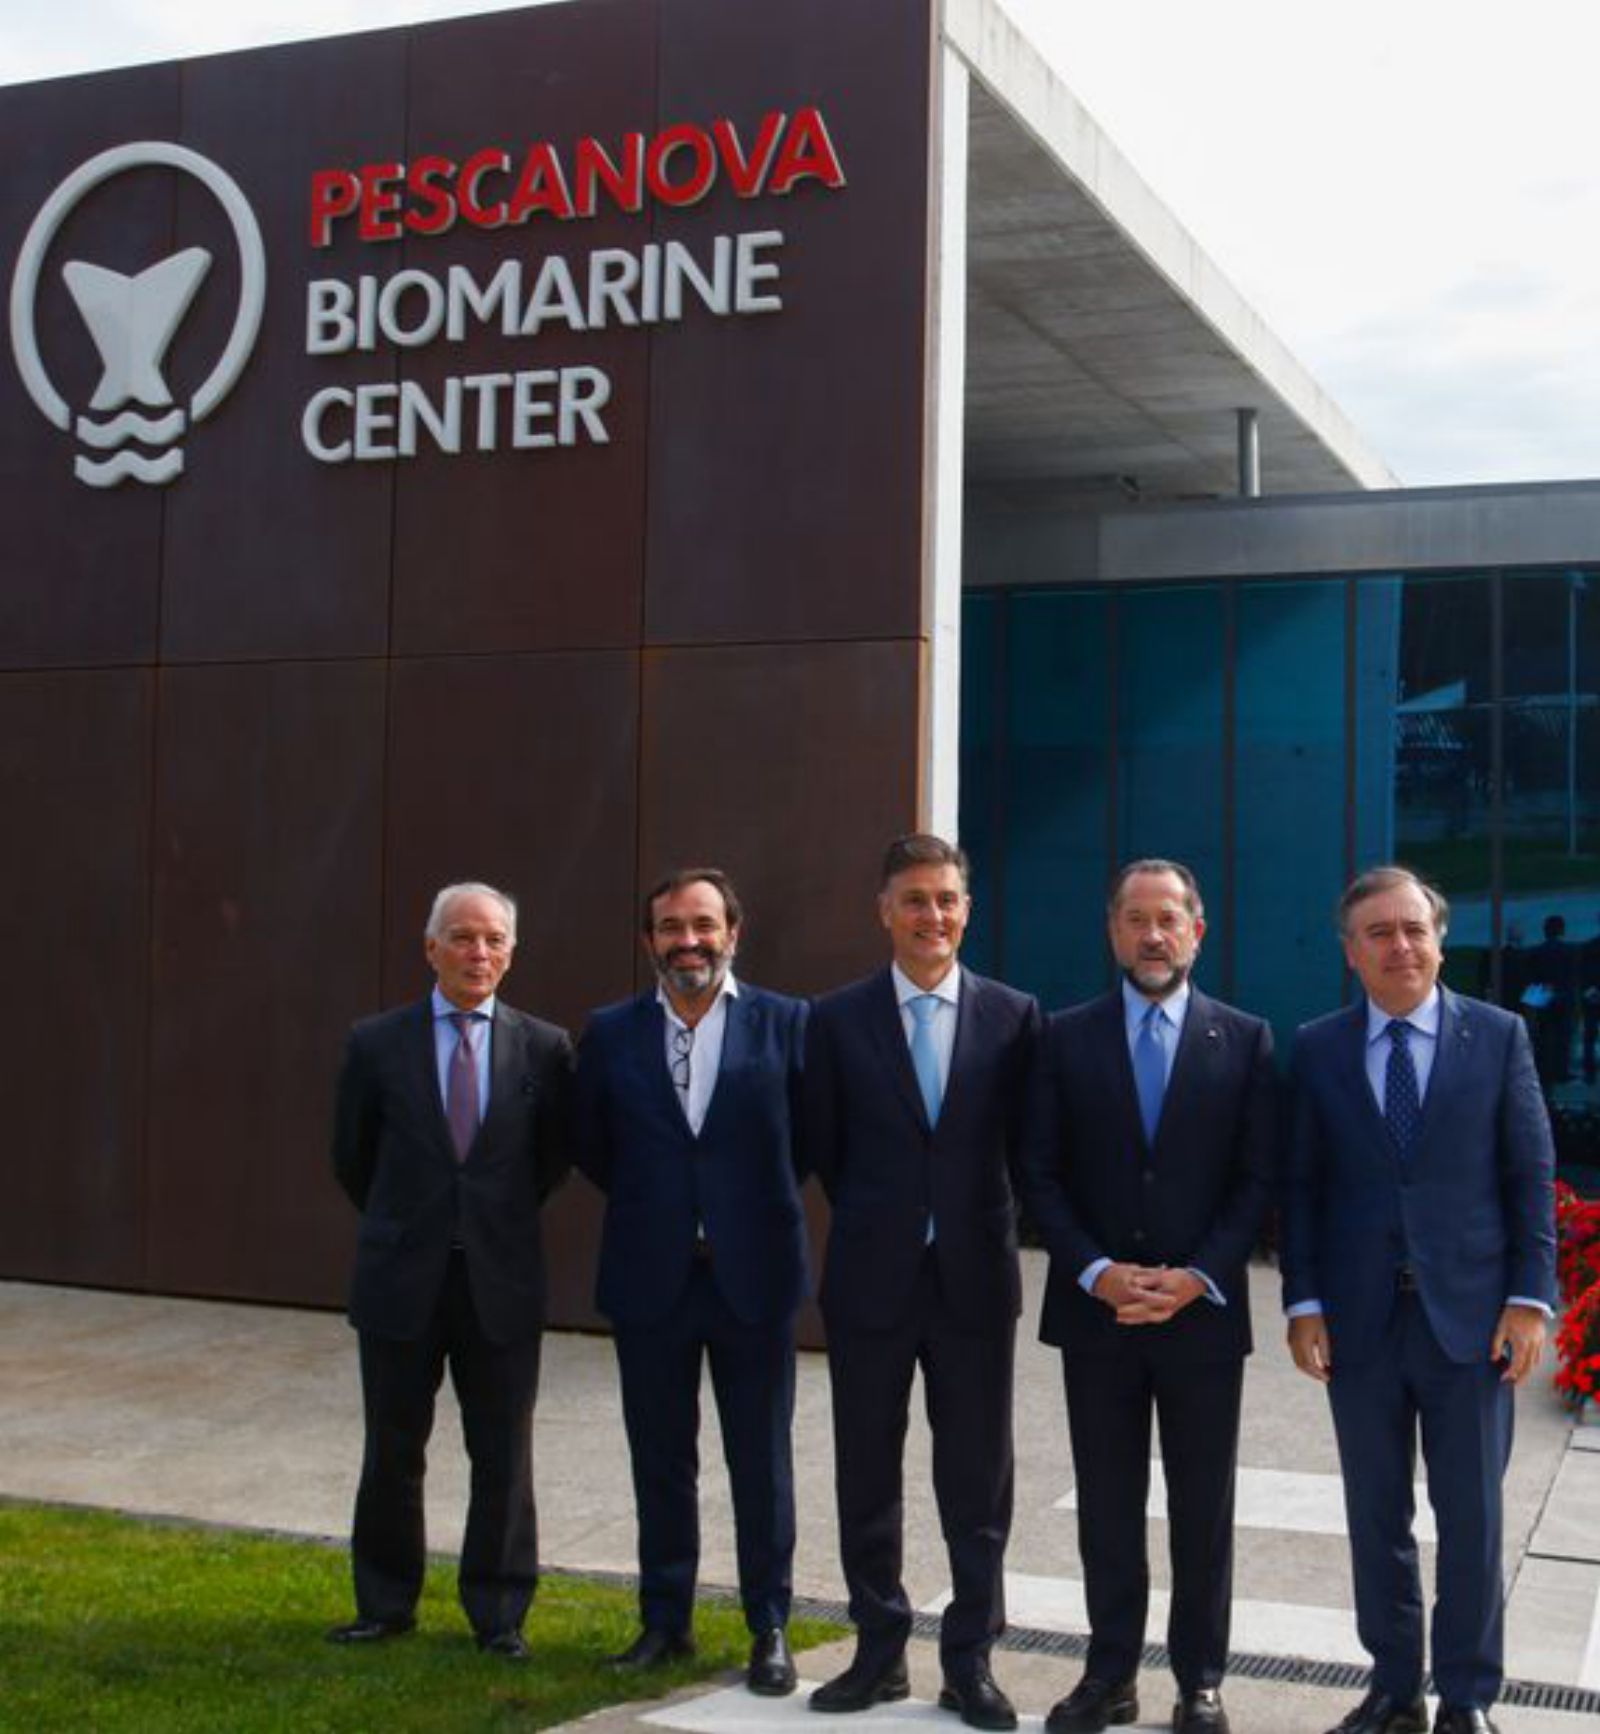 Los representantes de Pescanova presentaron ayer su nueva joya.